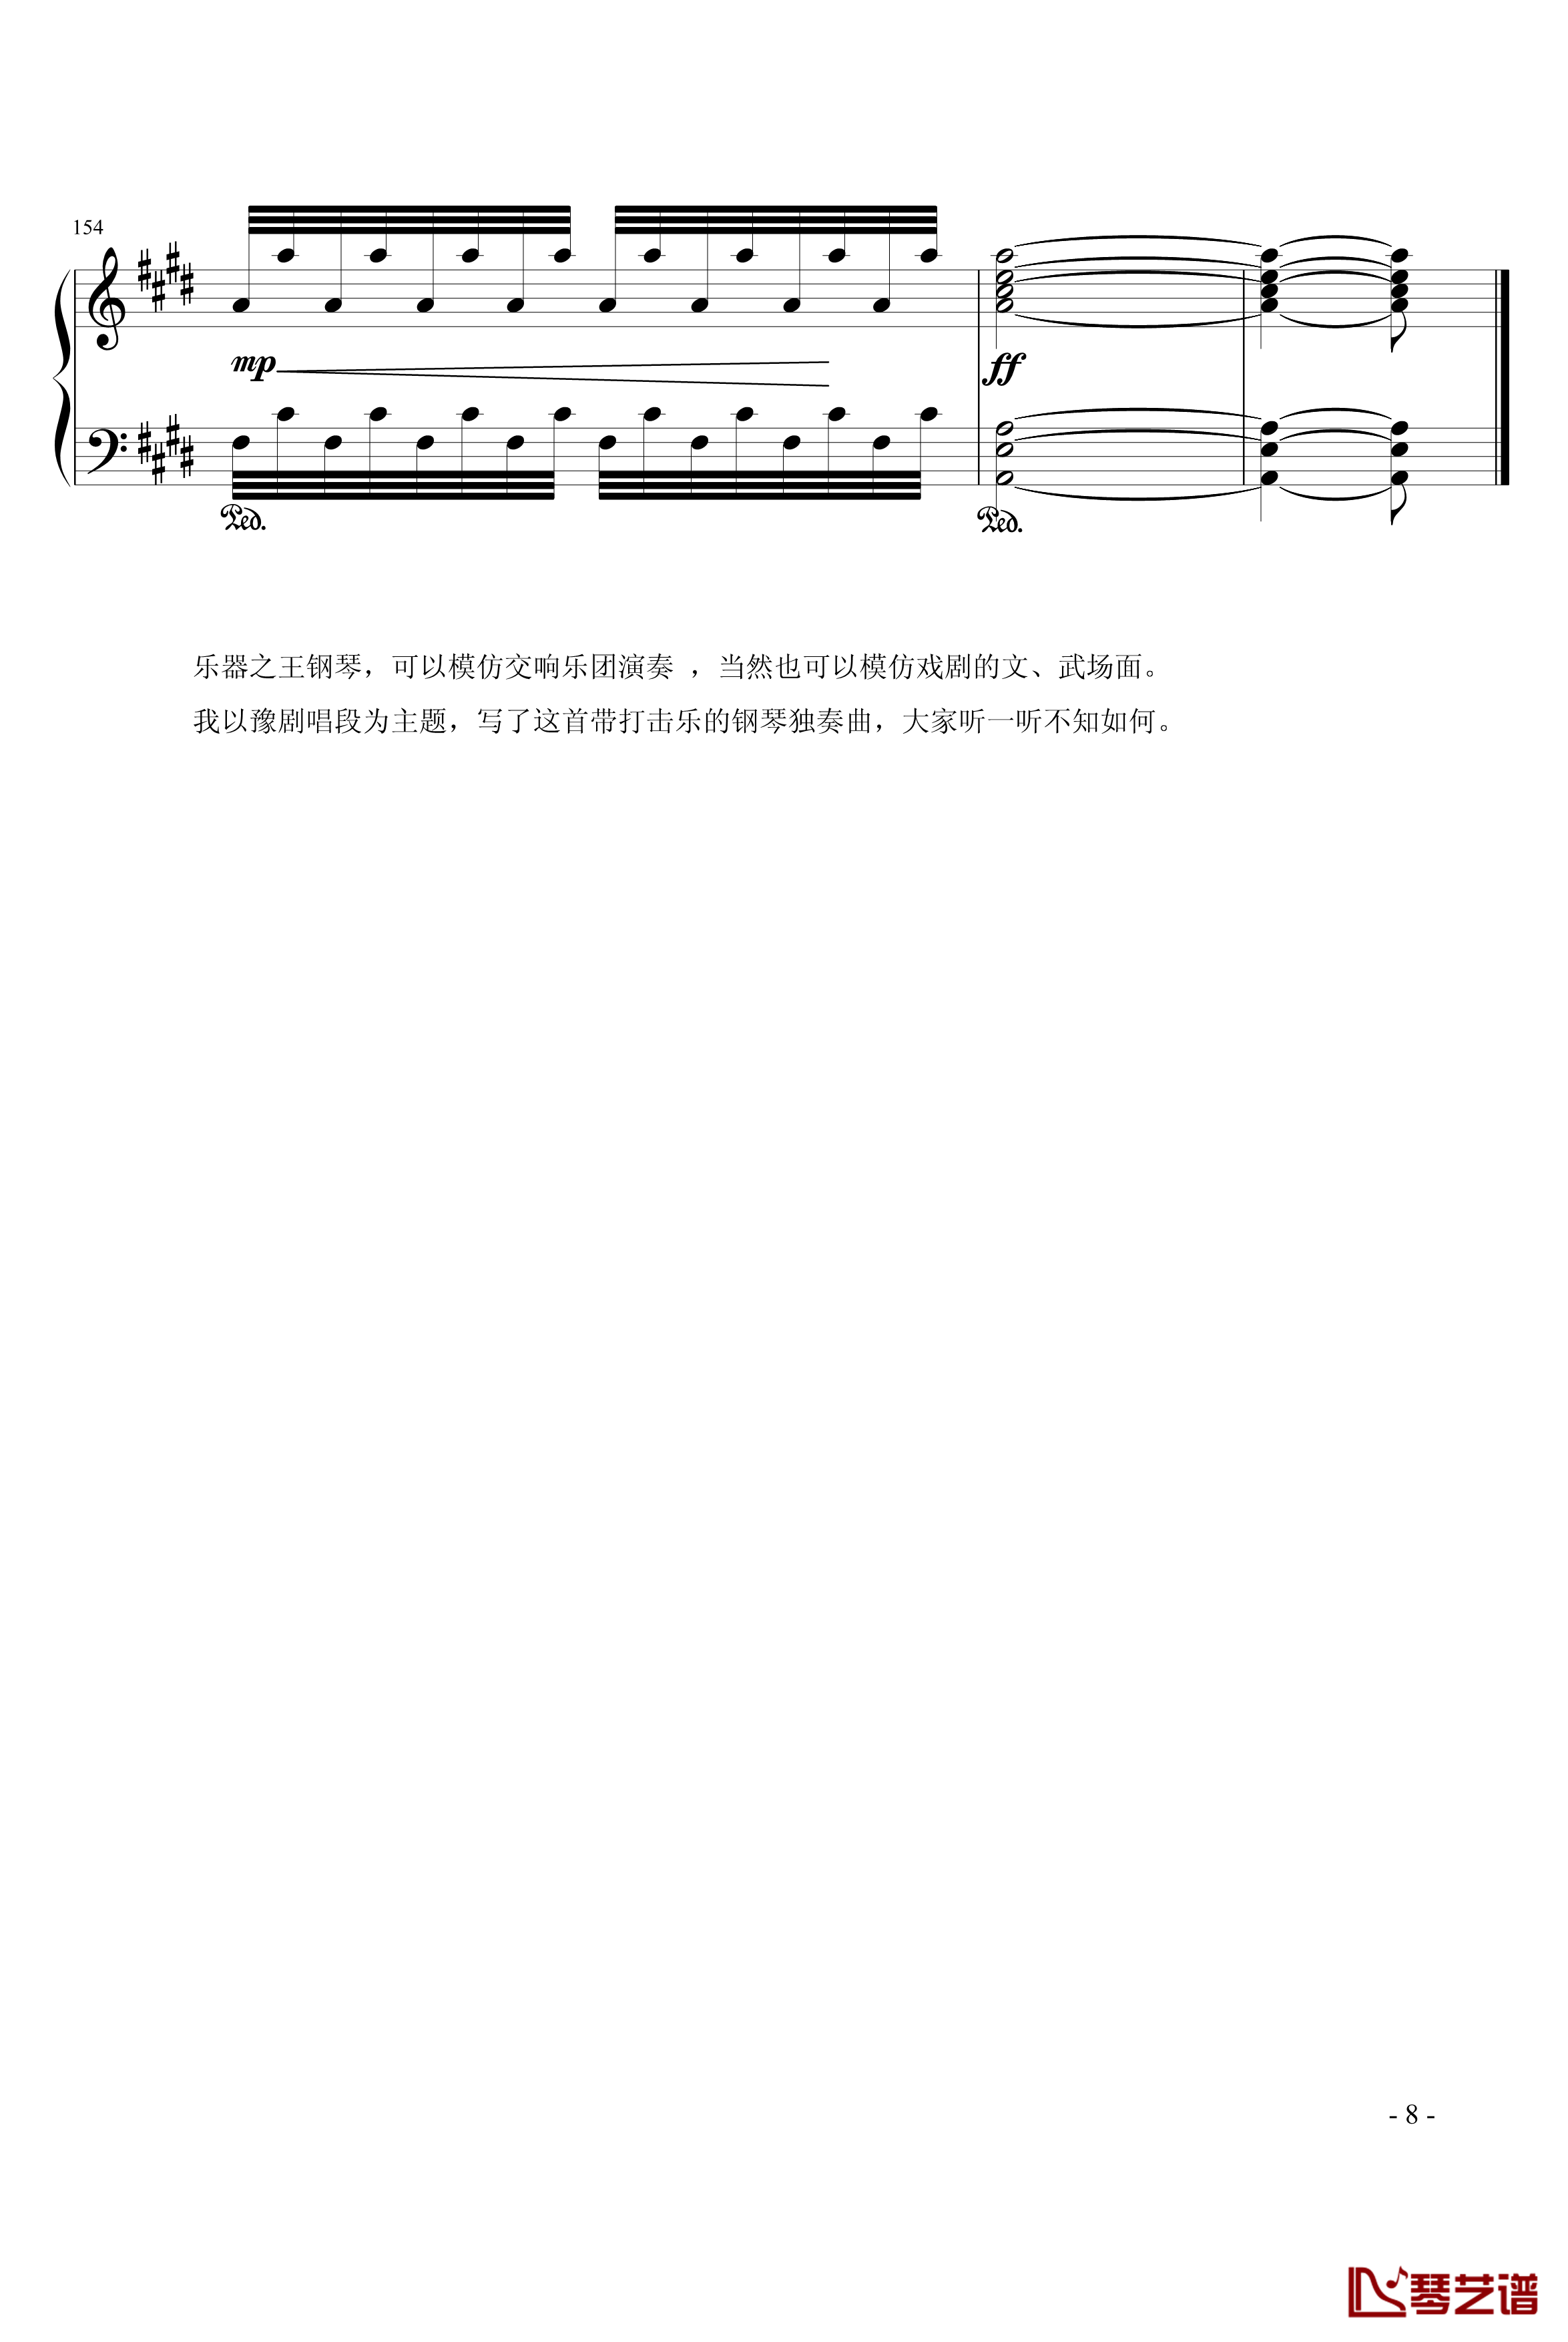 狂想曲钢琴谱-902chang